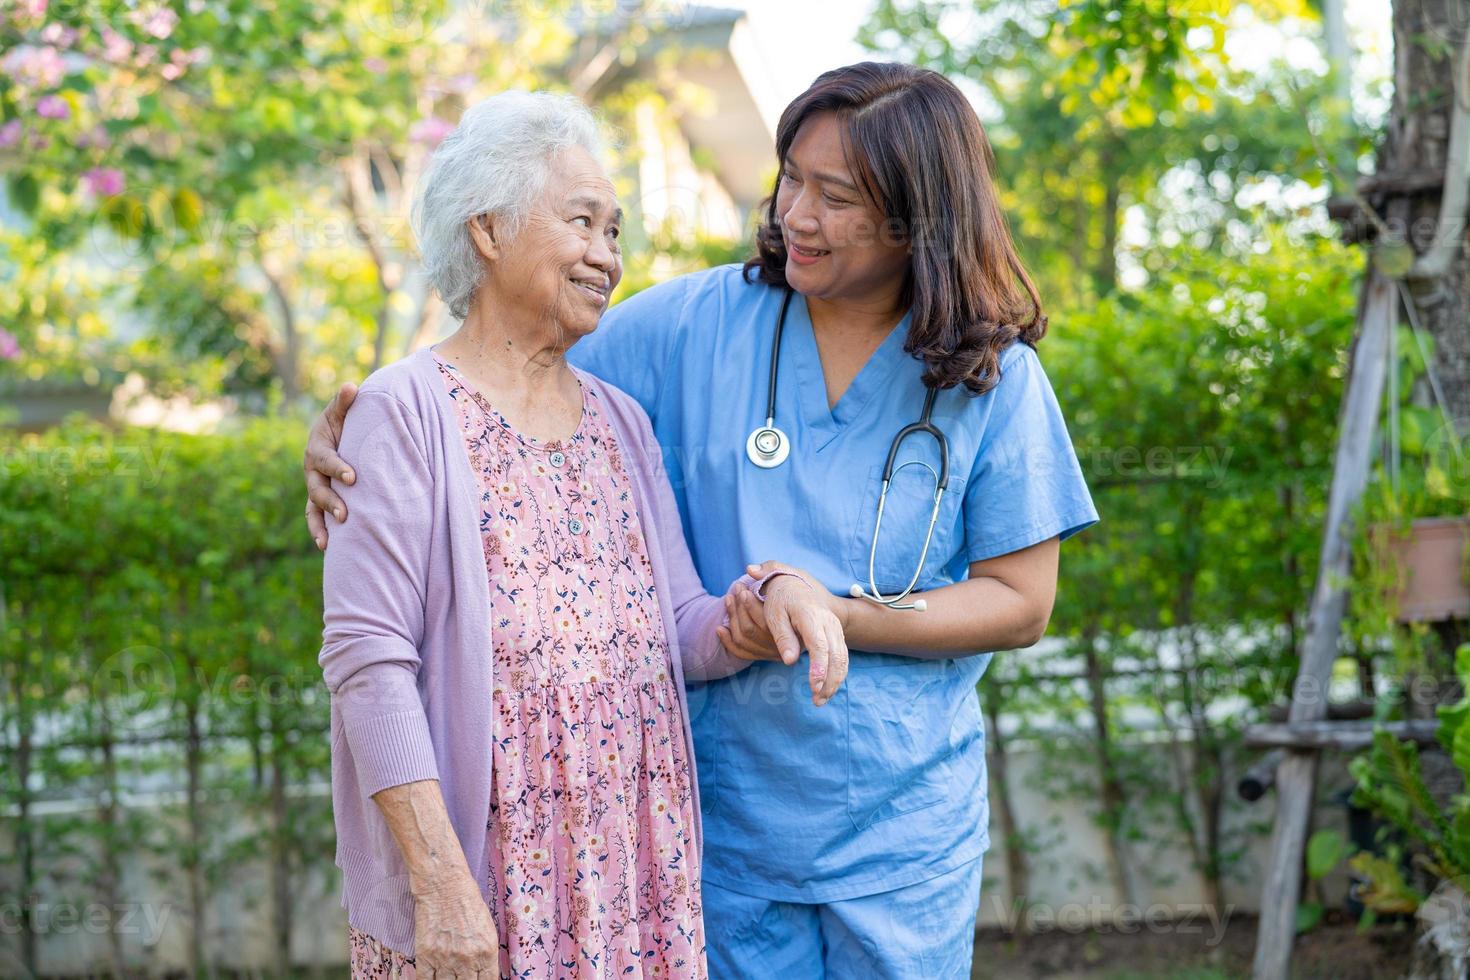 läkarehjälp och vård asiatisk äldre eller äldre gammal damkvinna använder rullator med stark hälsa när man går på park i glad ny semester. foto